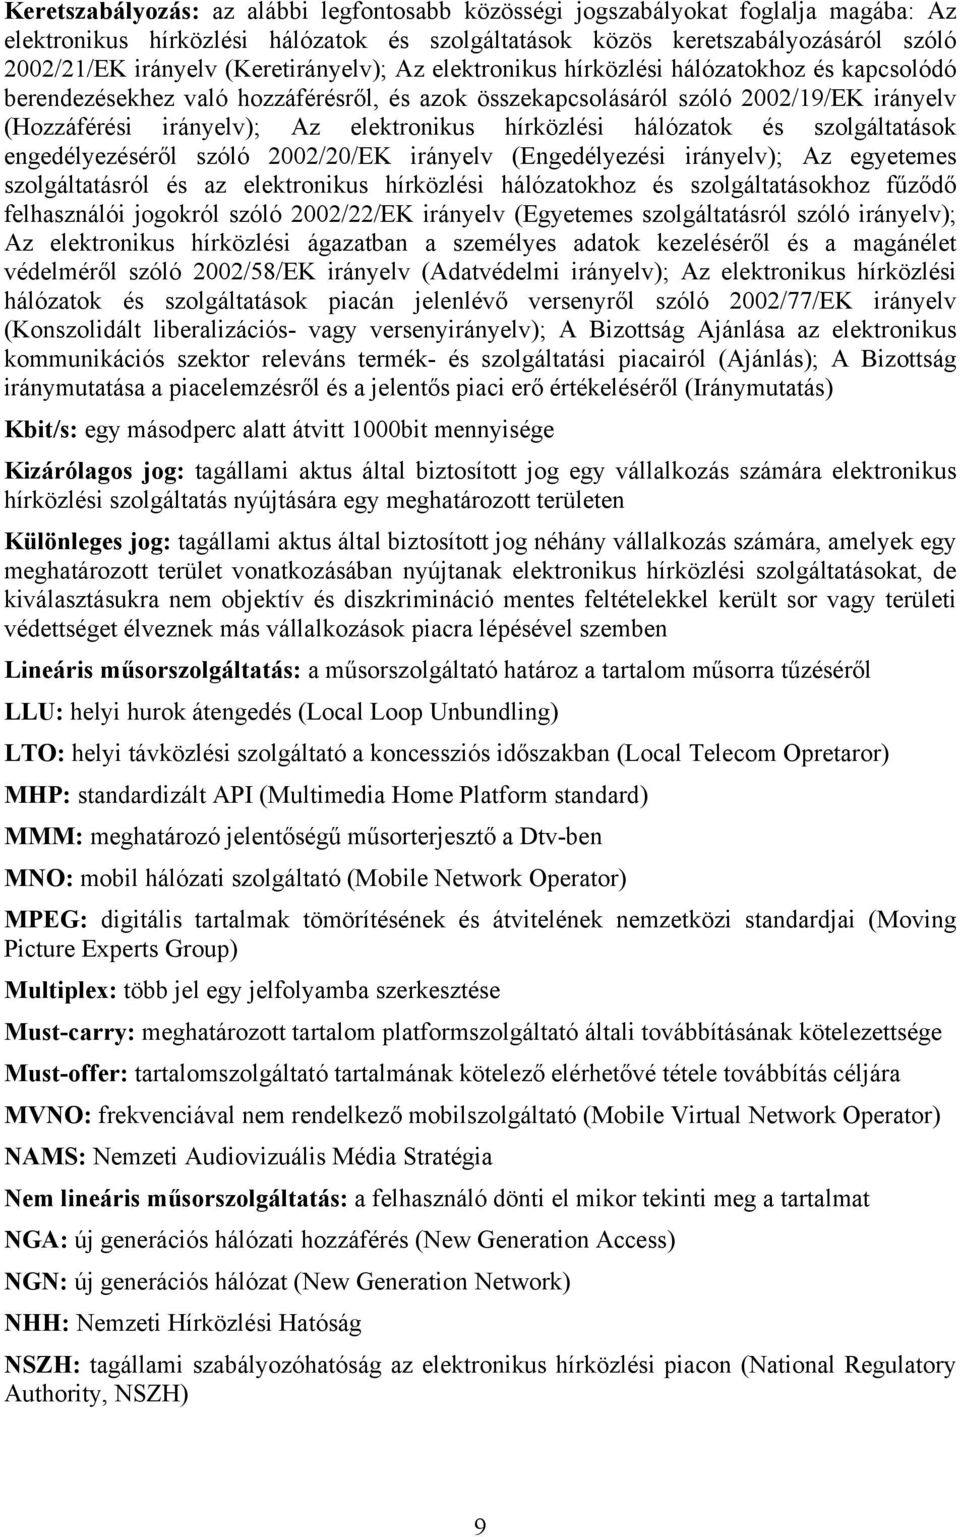 hírközlési hálózatok és szolgáltatások engedélyezéséről szóló 2002/20/EK irányelv (Engedélyezési irányelv); Az egyetemes szolgáltatásról és az elektronikus hírközlési hálózatokhoz és